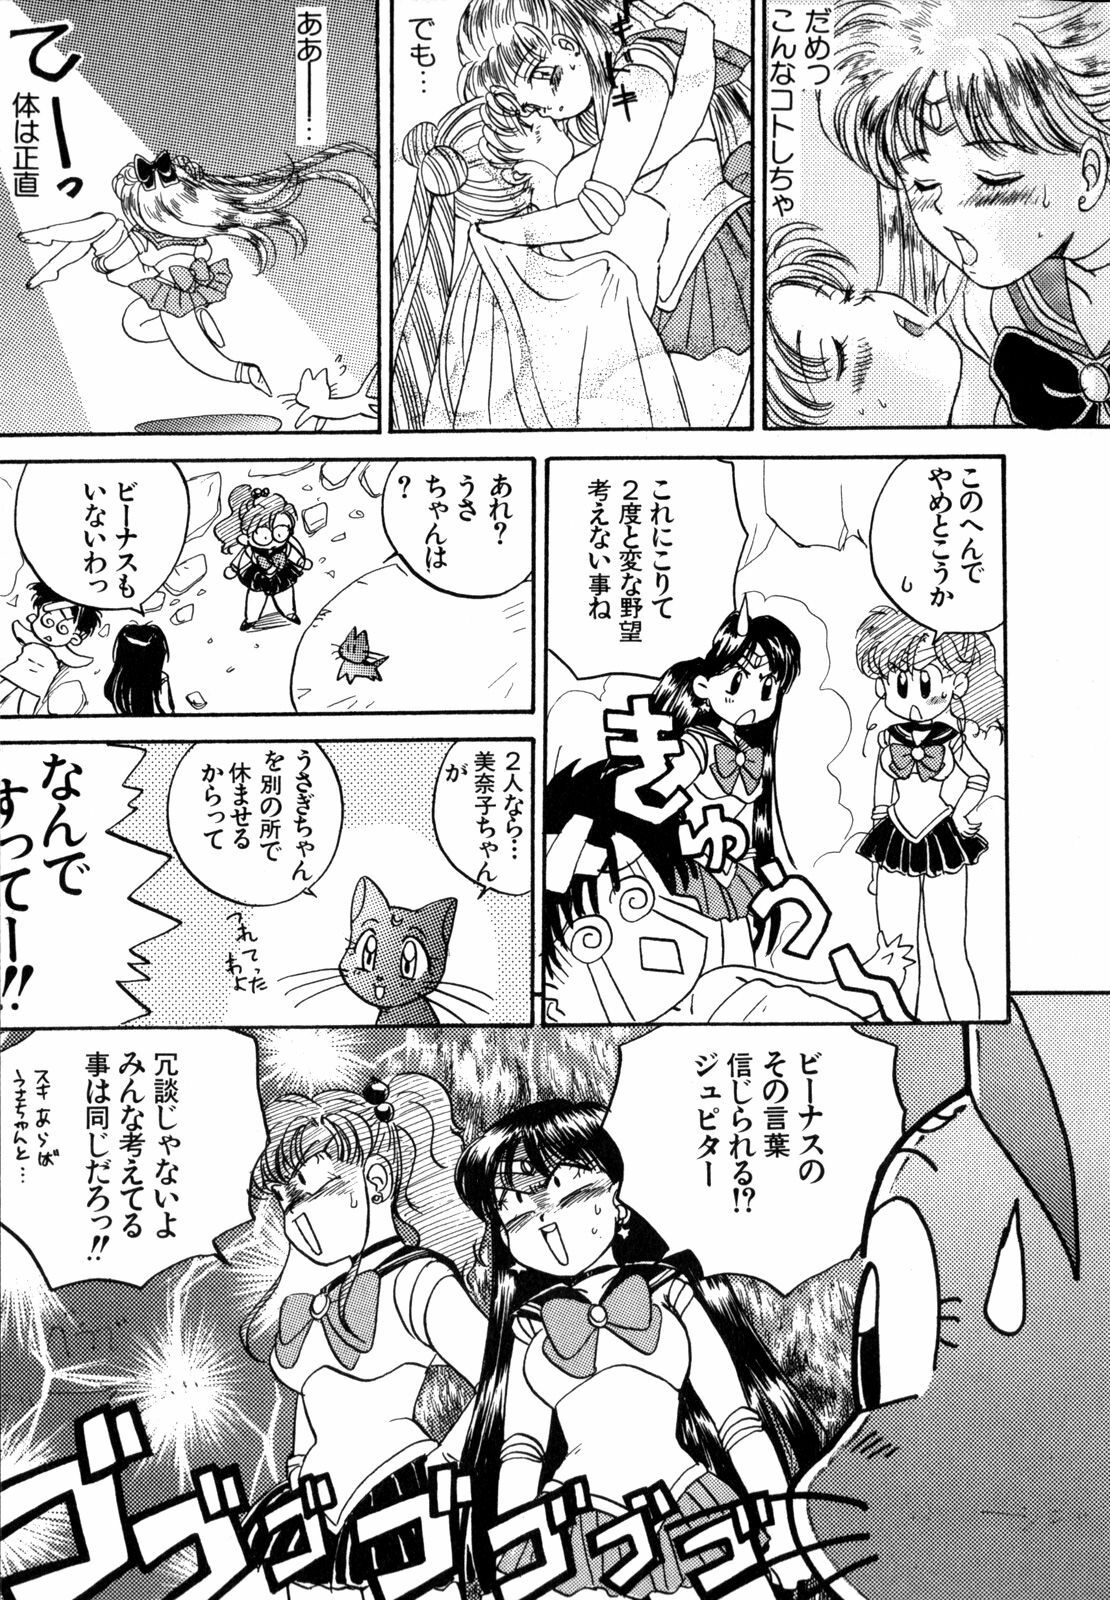 [Anthology] Lunatic Party 4 (Bishoujo Senshi Sailor Moon) page 46 full